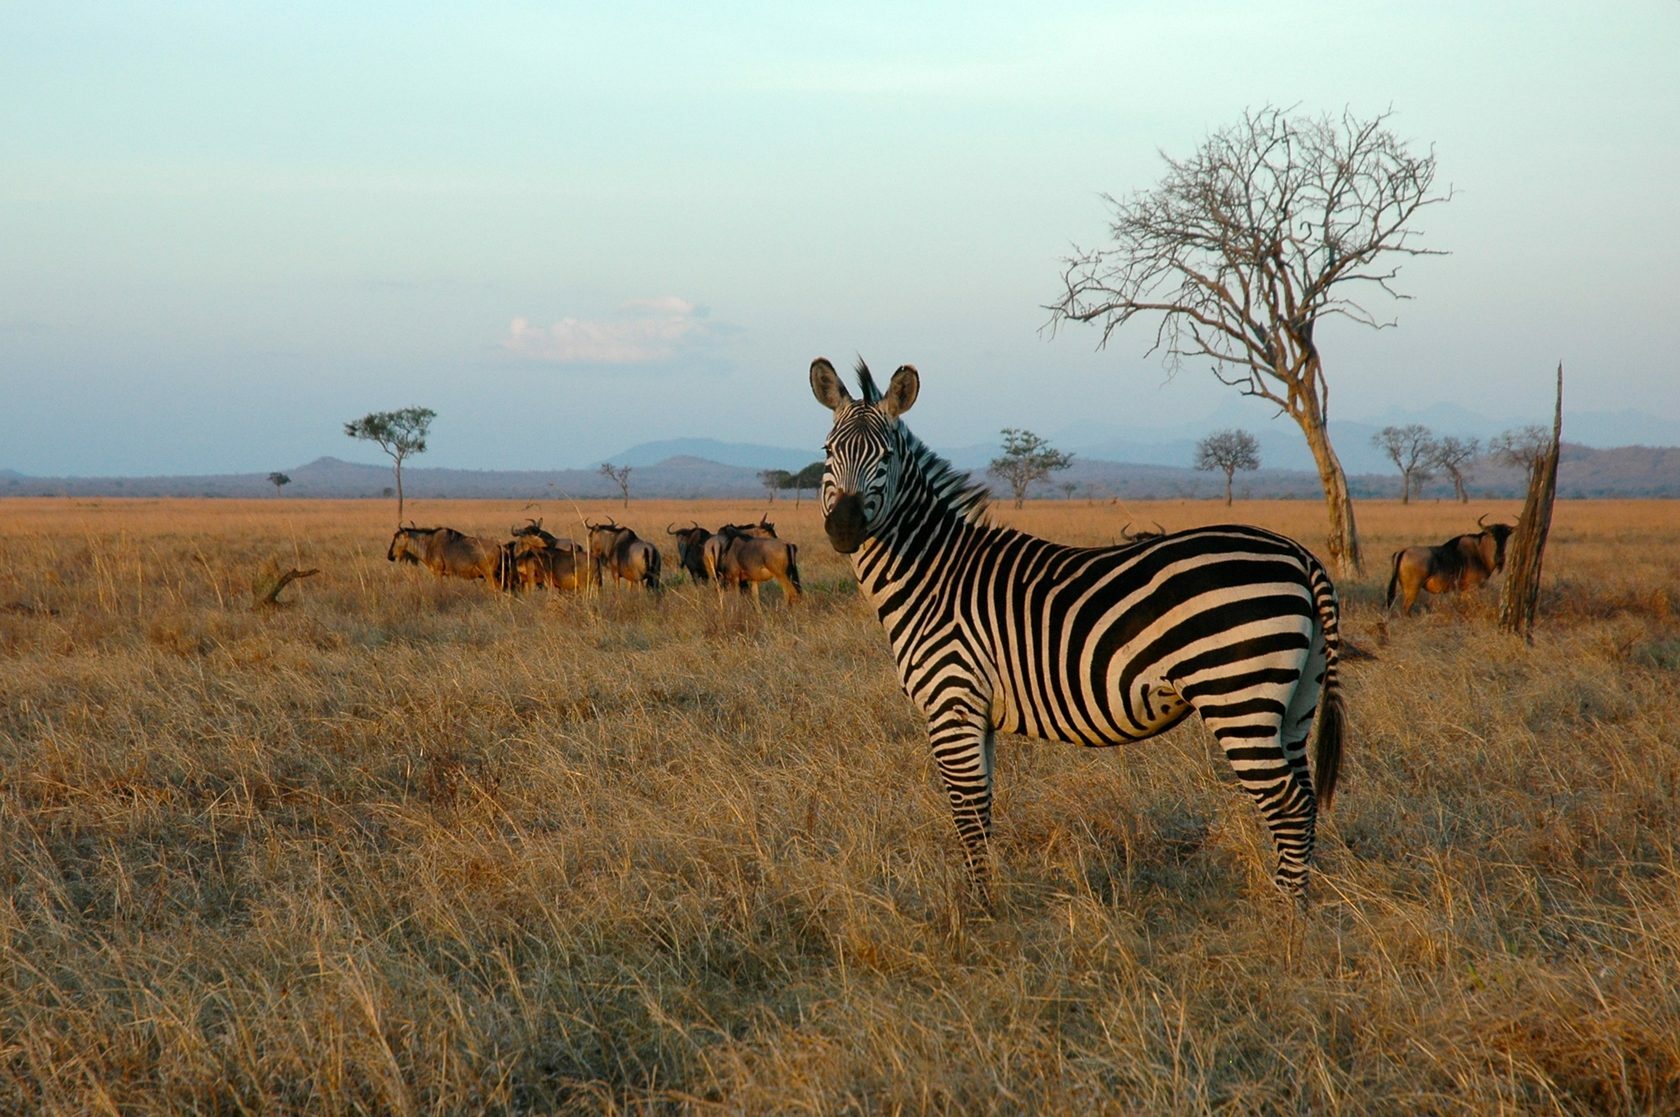 Саванной восточной африки. Парк Микуми Танзания. Национальный парк Микуми в Танзании. Сафари Микуми Танзания. Сафари в национальном парке Микуми.